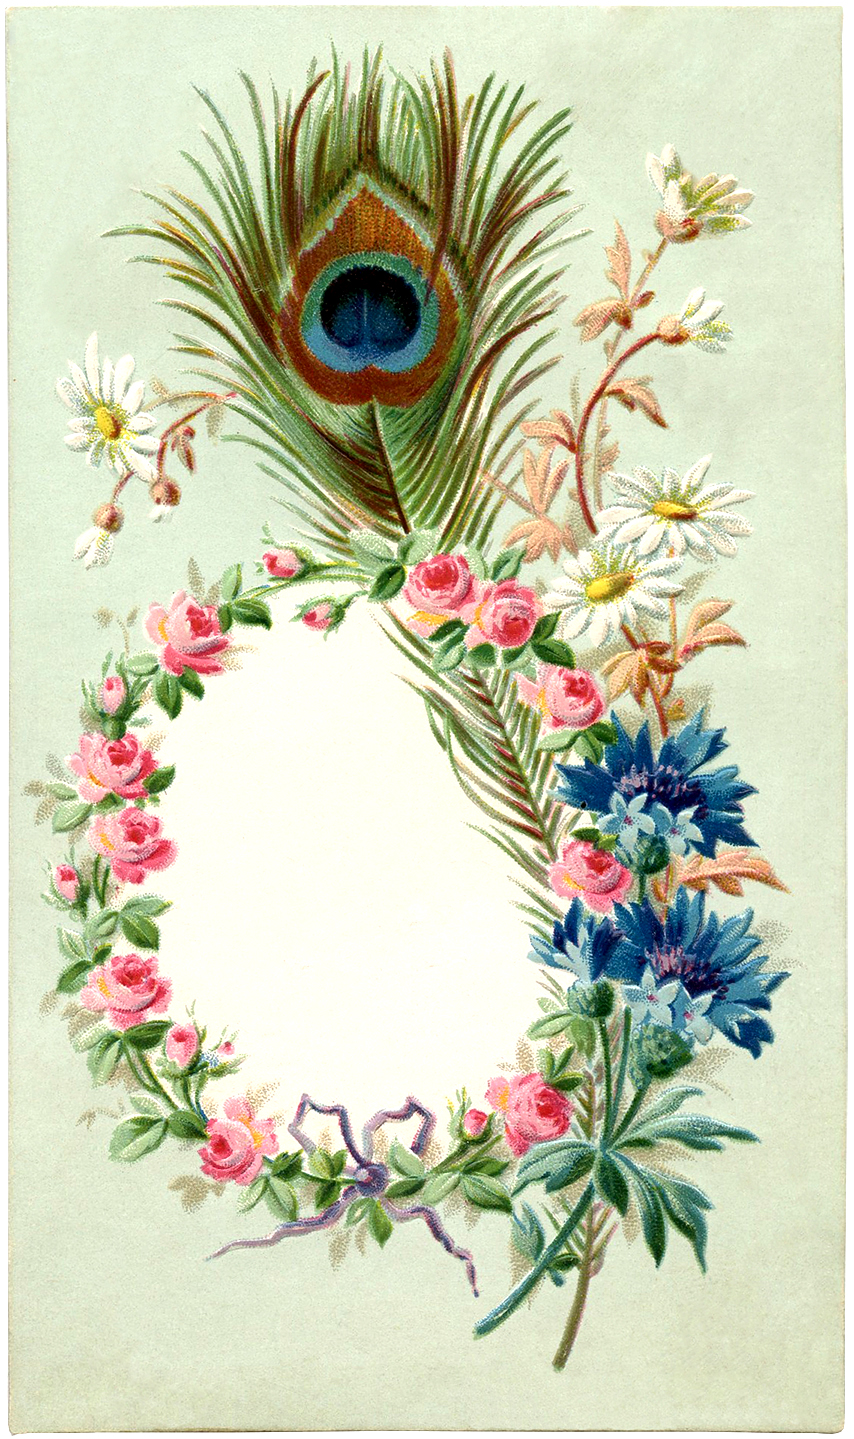 fond d'écran de cadre pour l'art,fleur,plante,couronne,art floral,fleuristerie